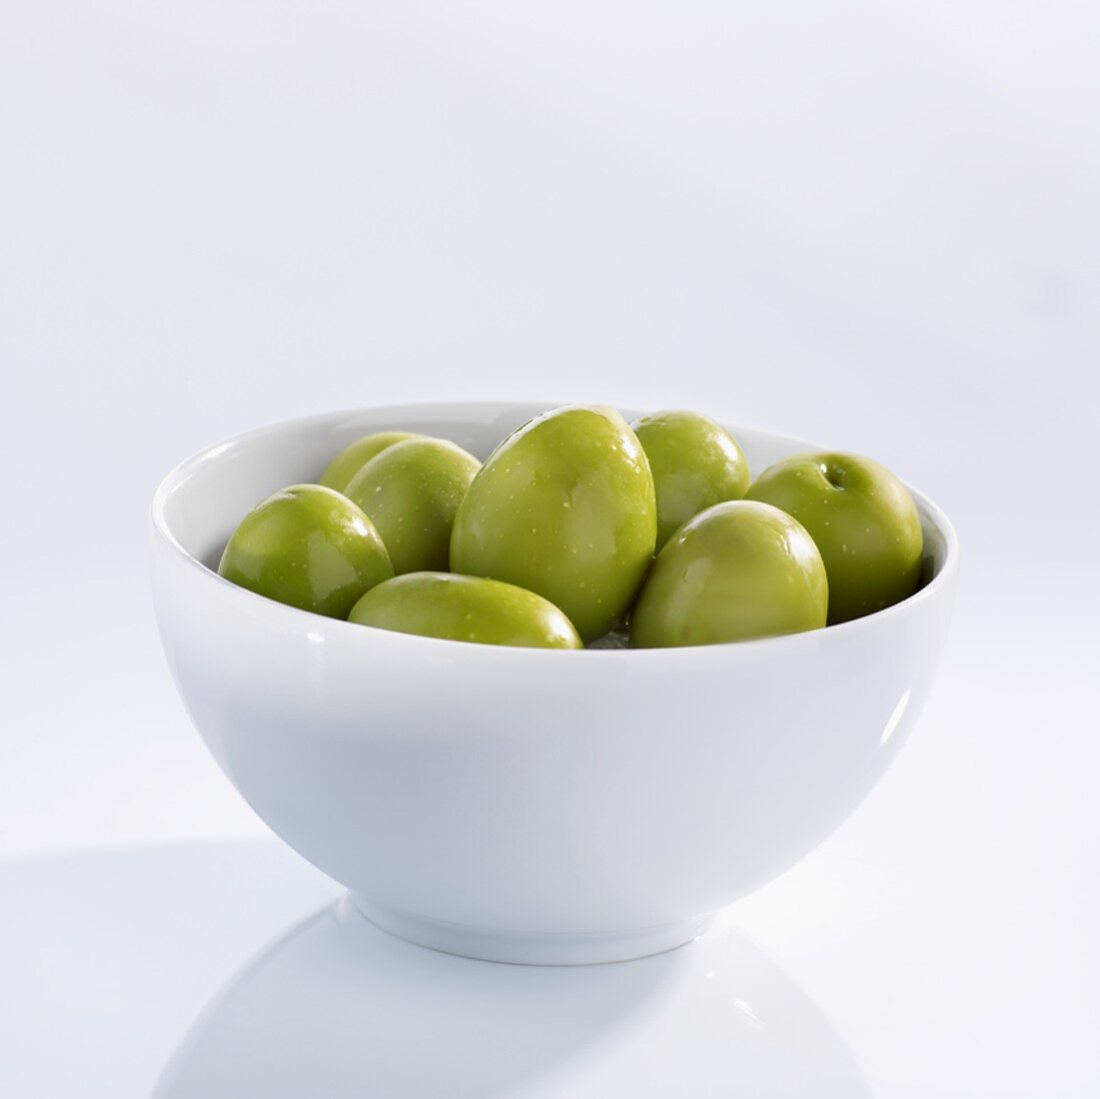 Large, green olives